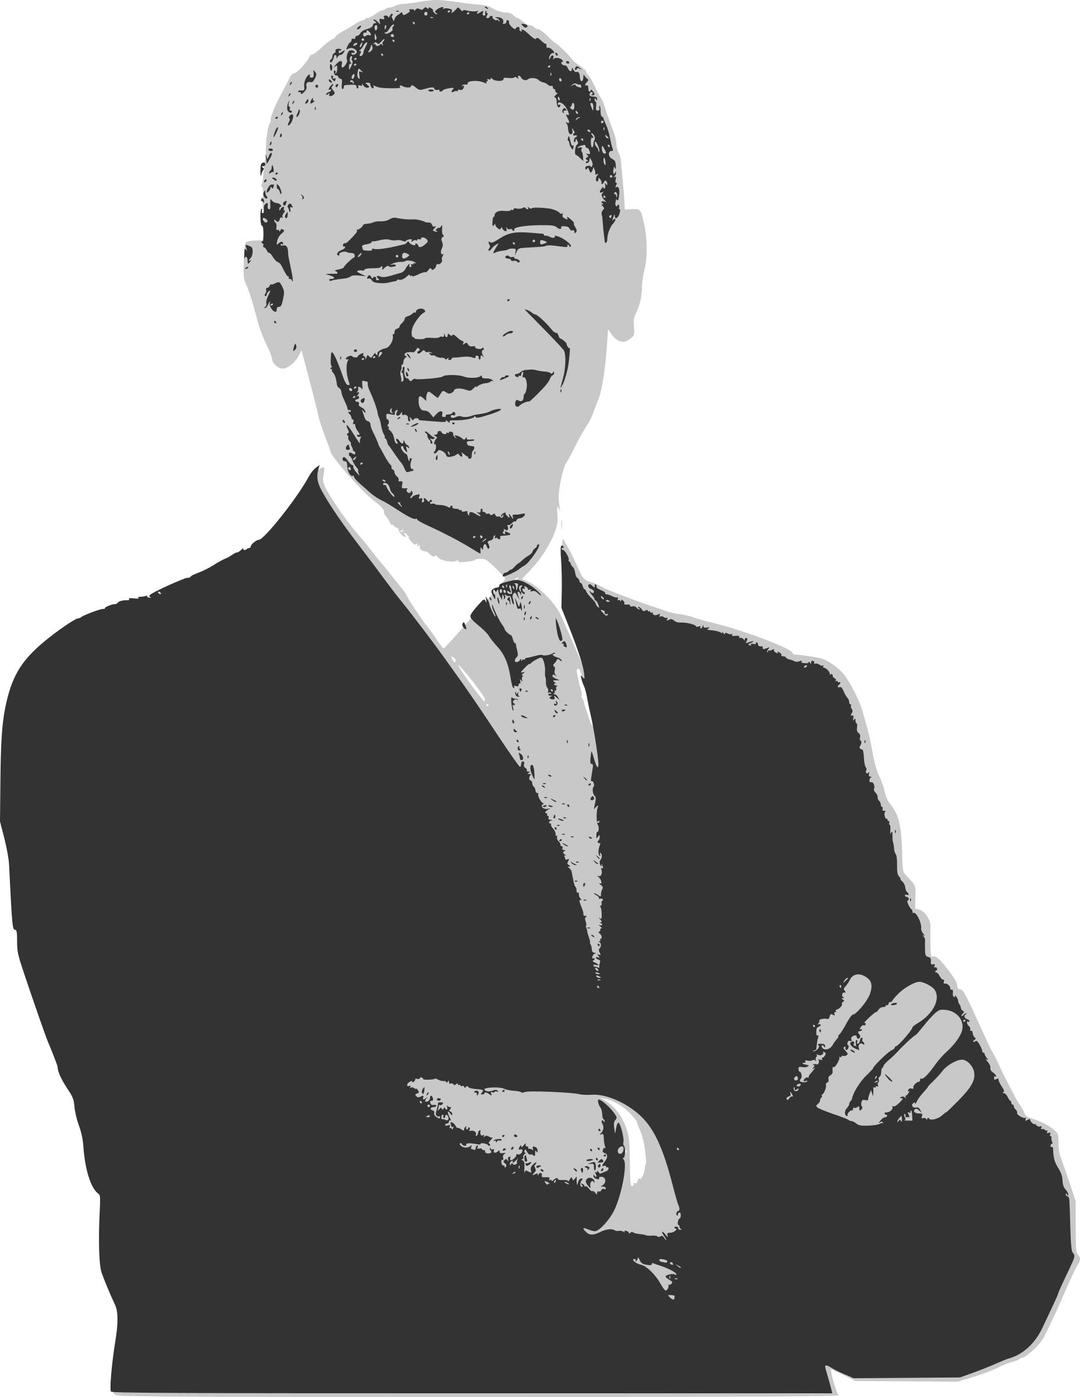 Barack Obama Print Warhol Stylee png transparent